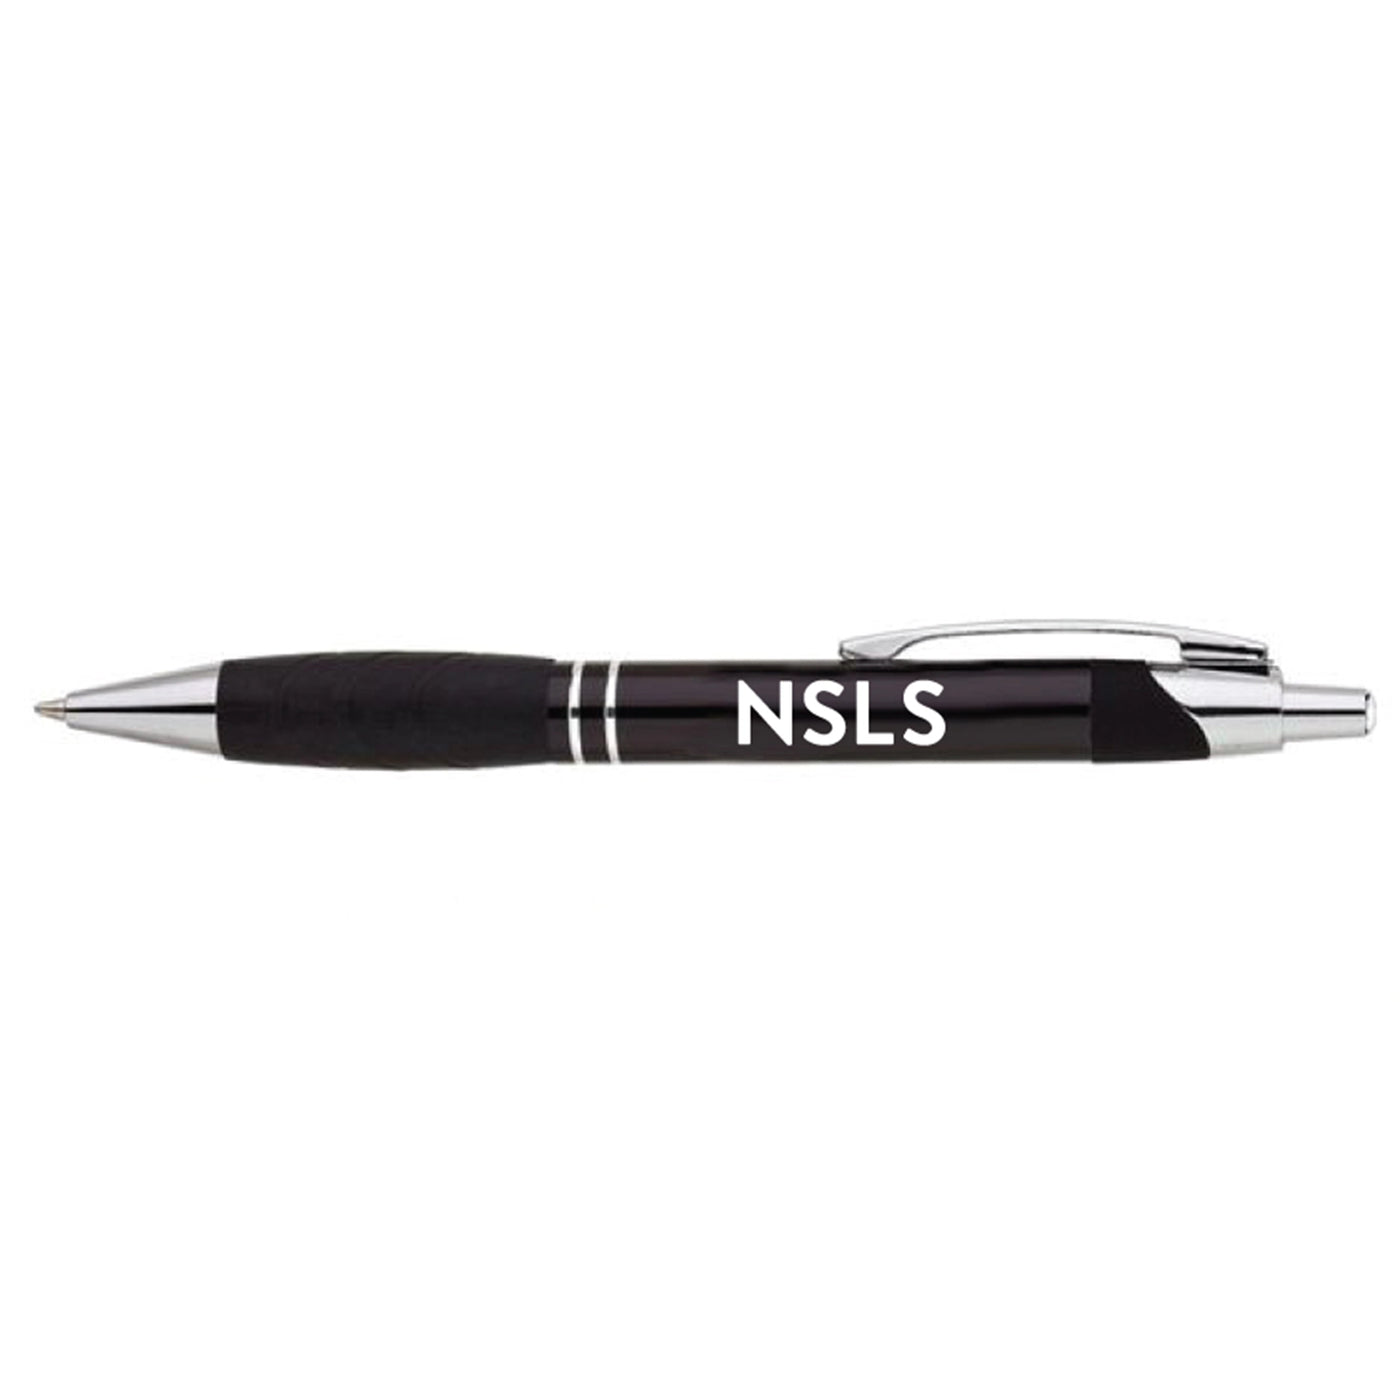 NSLS Letter Ballpoint Pen